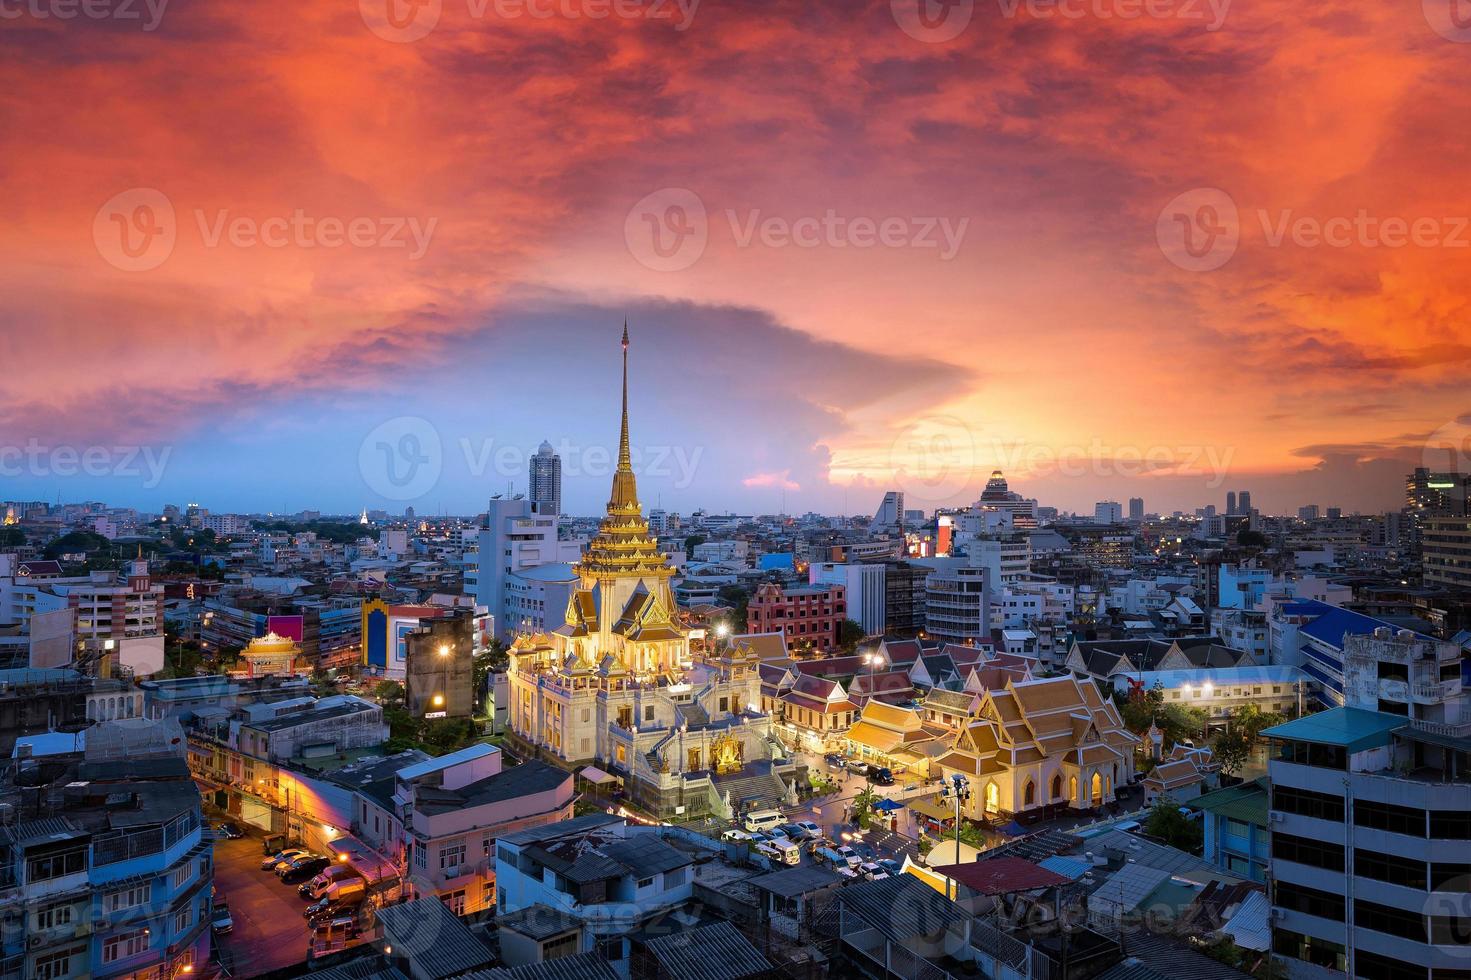 vista del paisaje de wat traimit witthayaram worawihan atractivo templo de bangkok para el turismo al atardecer. templo del buda dorado más grande en bangkok, tailandia foto